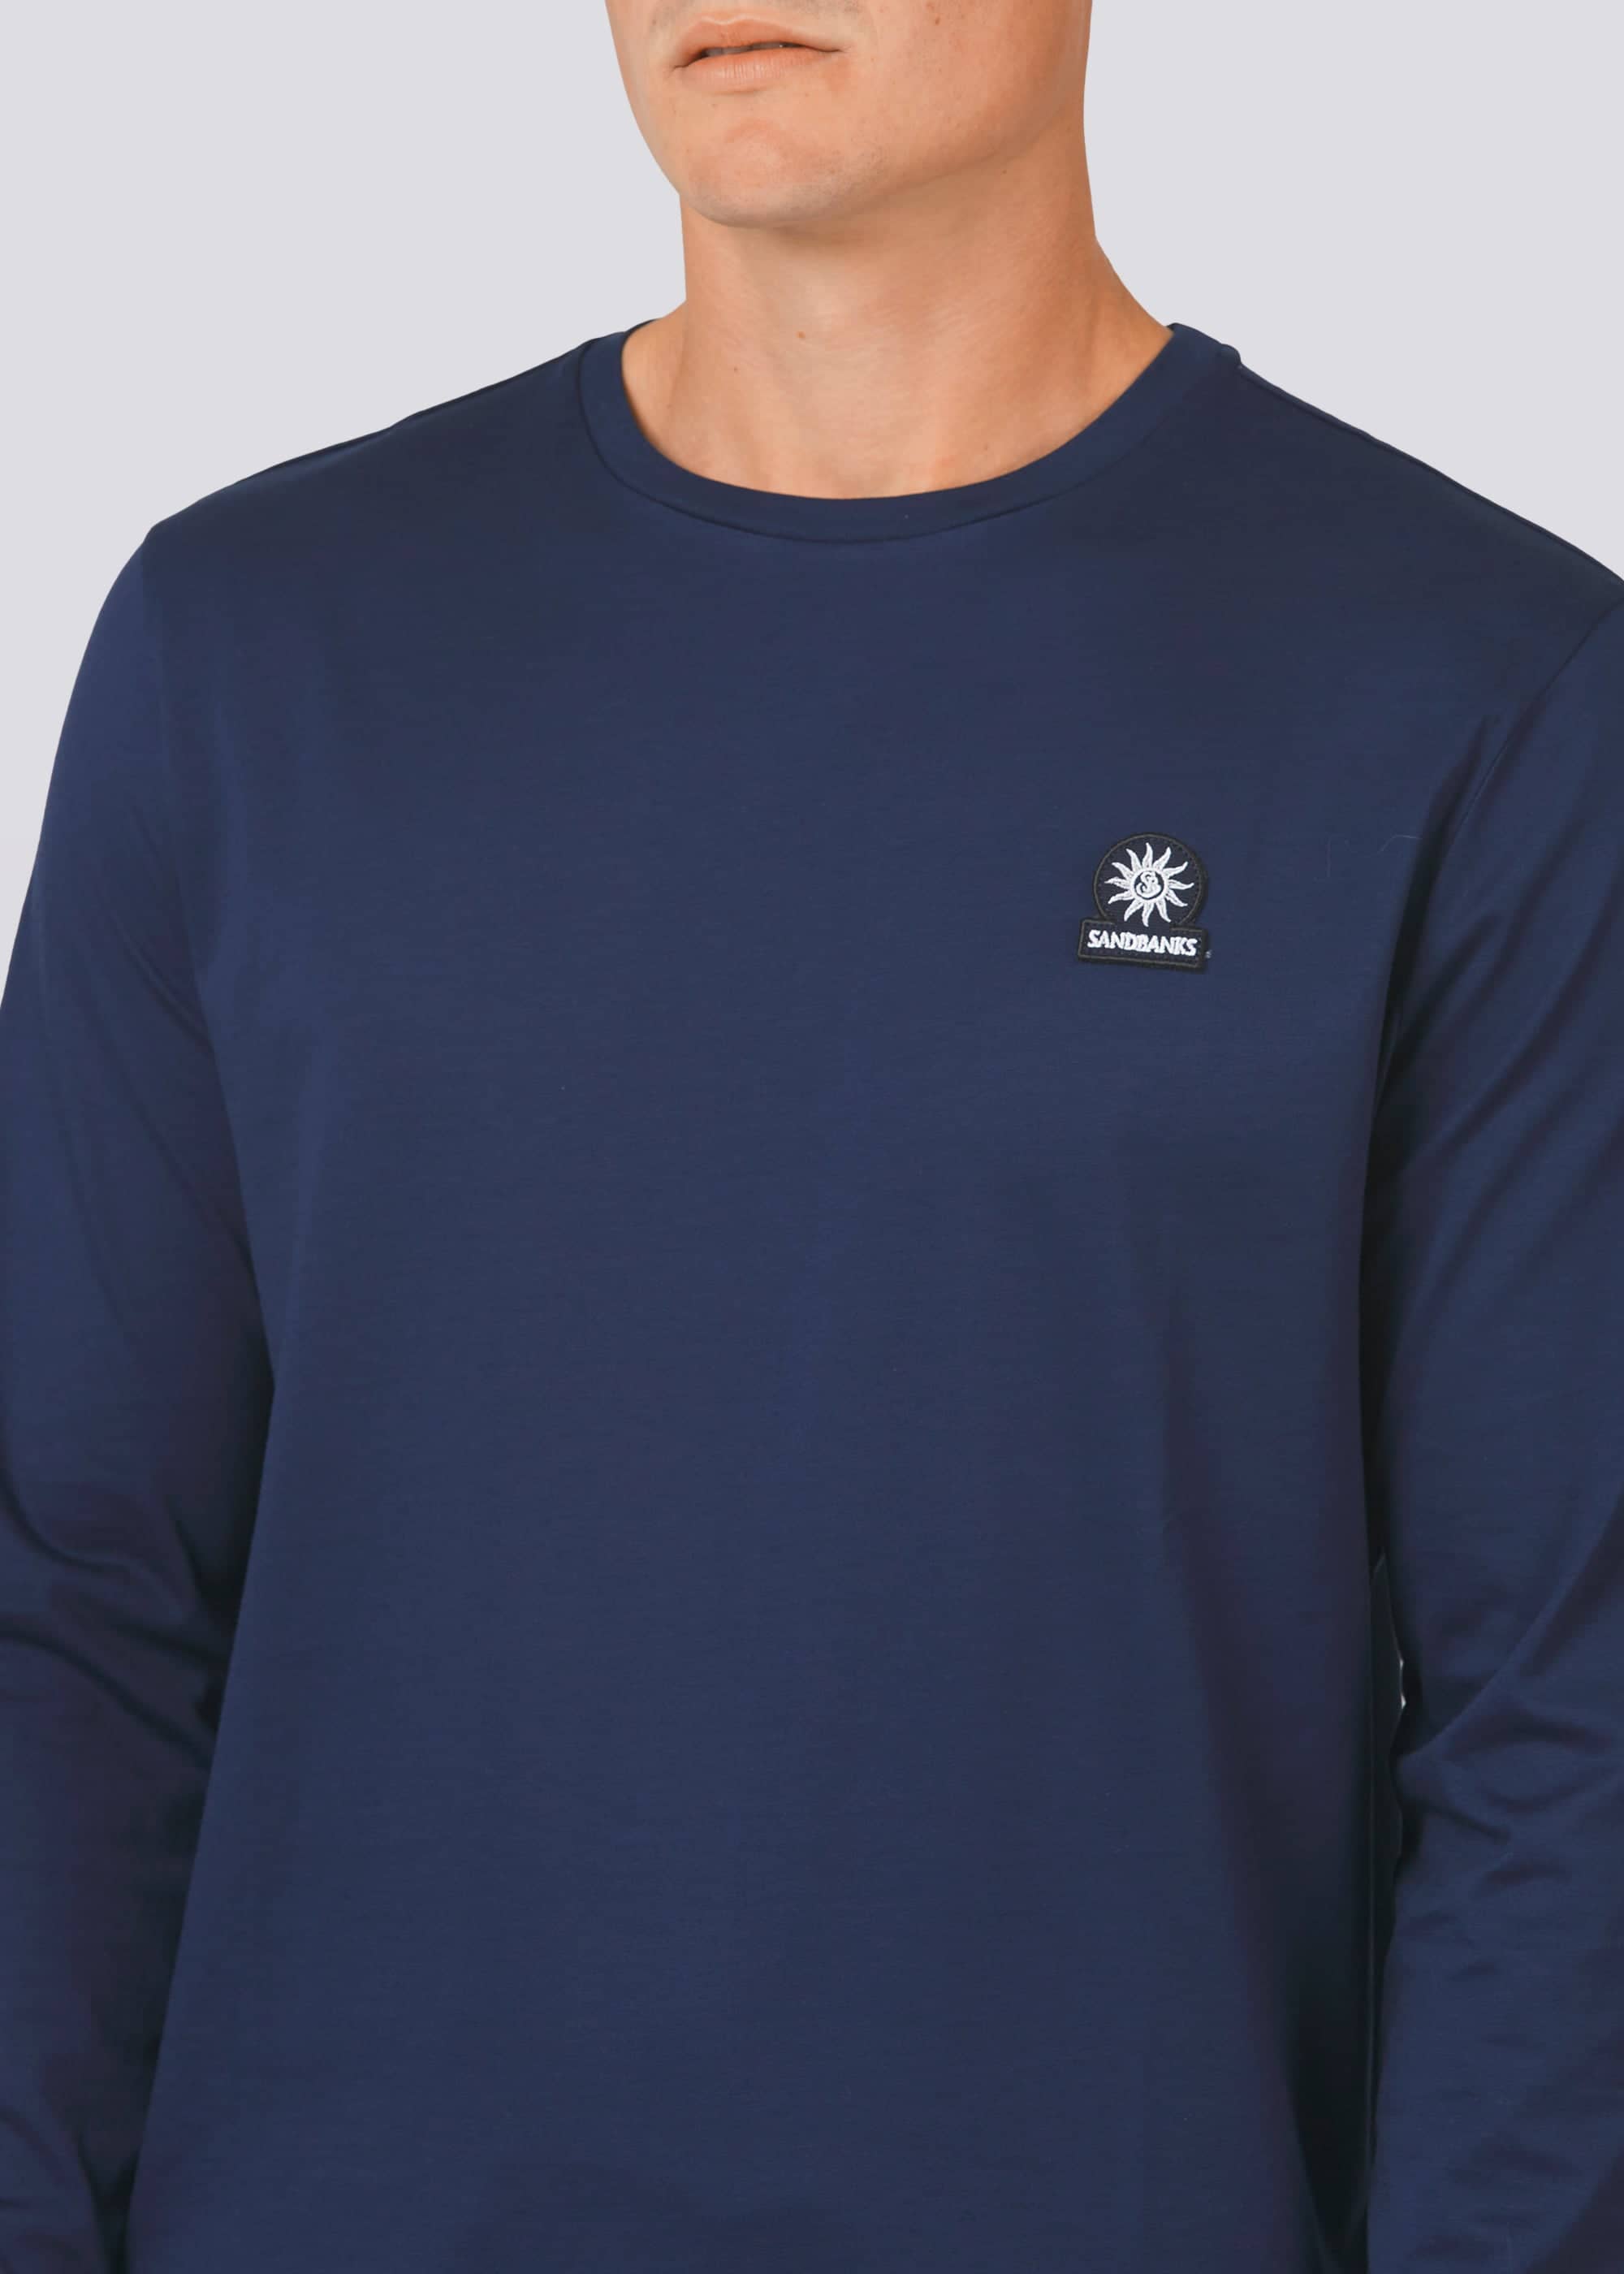 Sandbanks Badge Logo Long Sleeve T-Shirt - Navy - Sandbanks